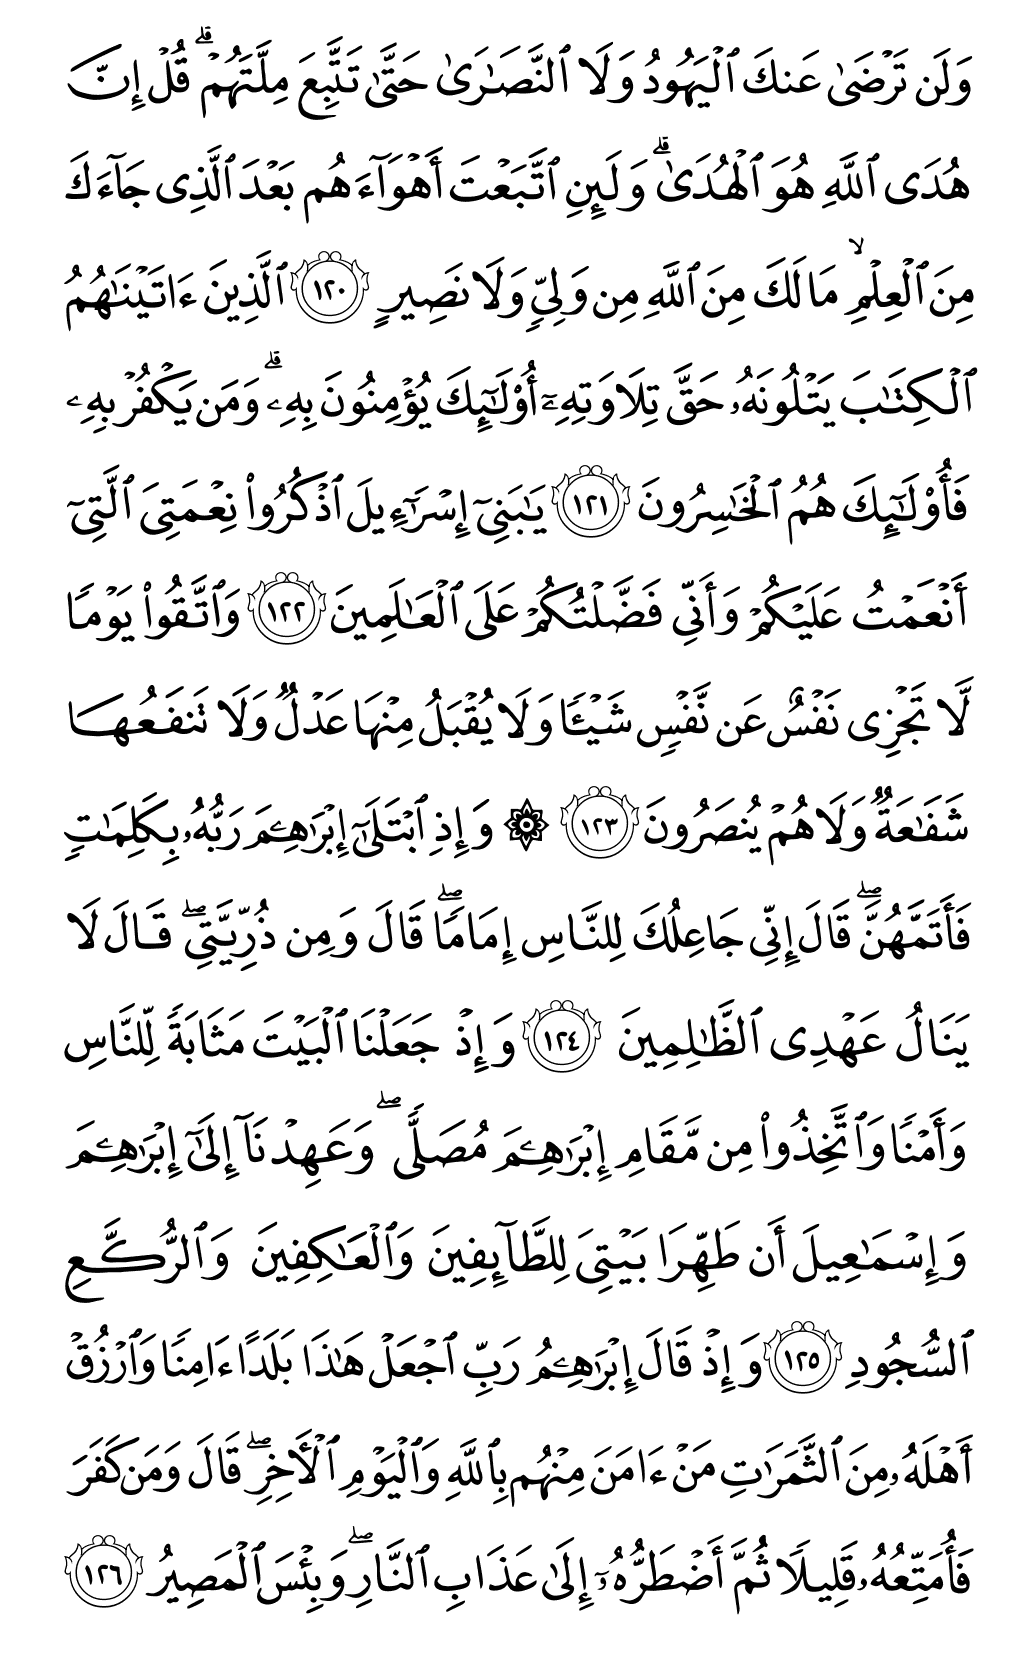 الصفحة رقم 19 من القرآن الكريم